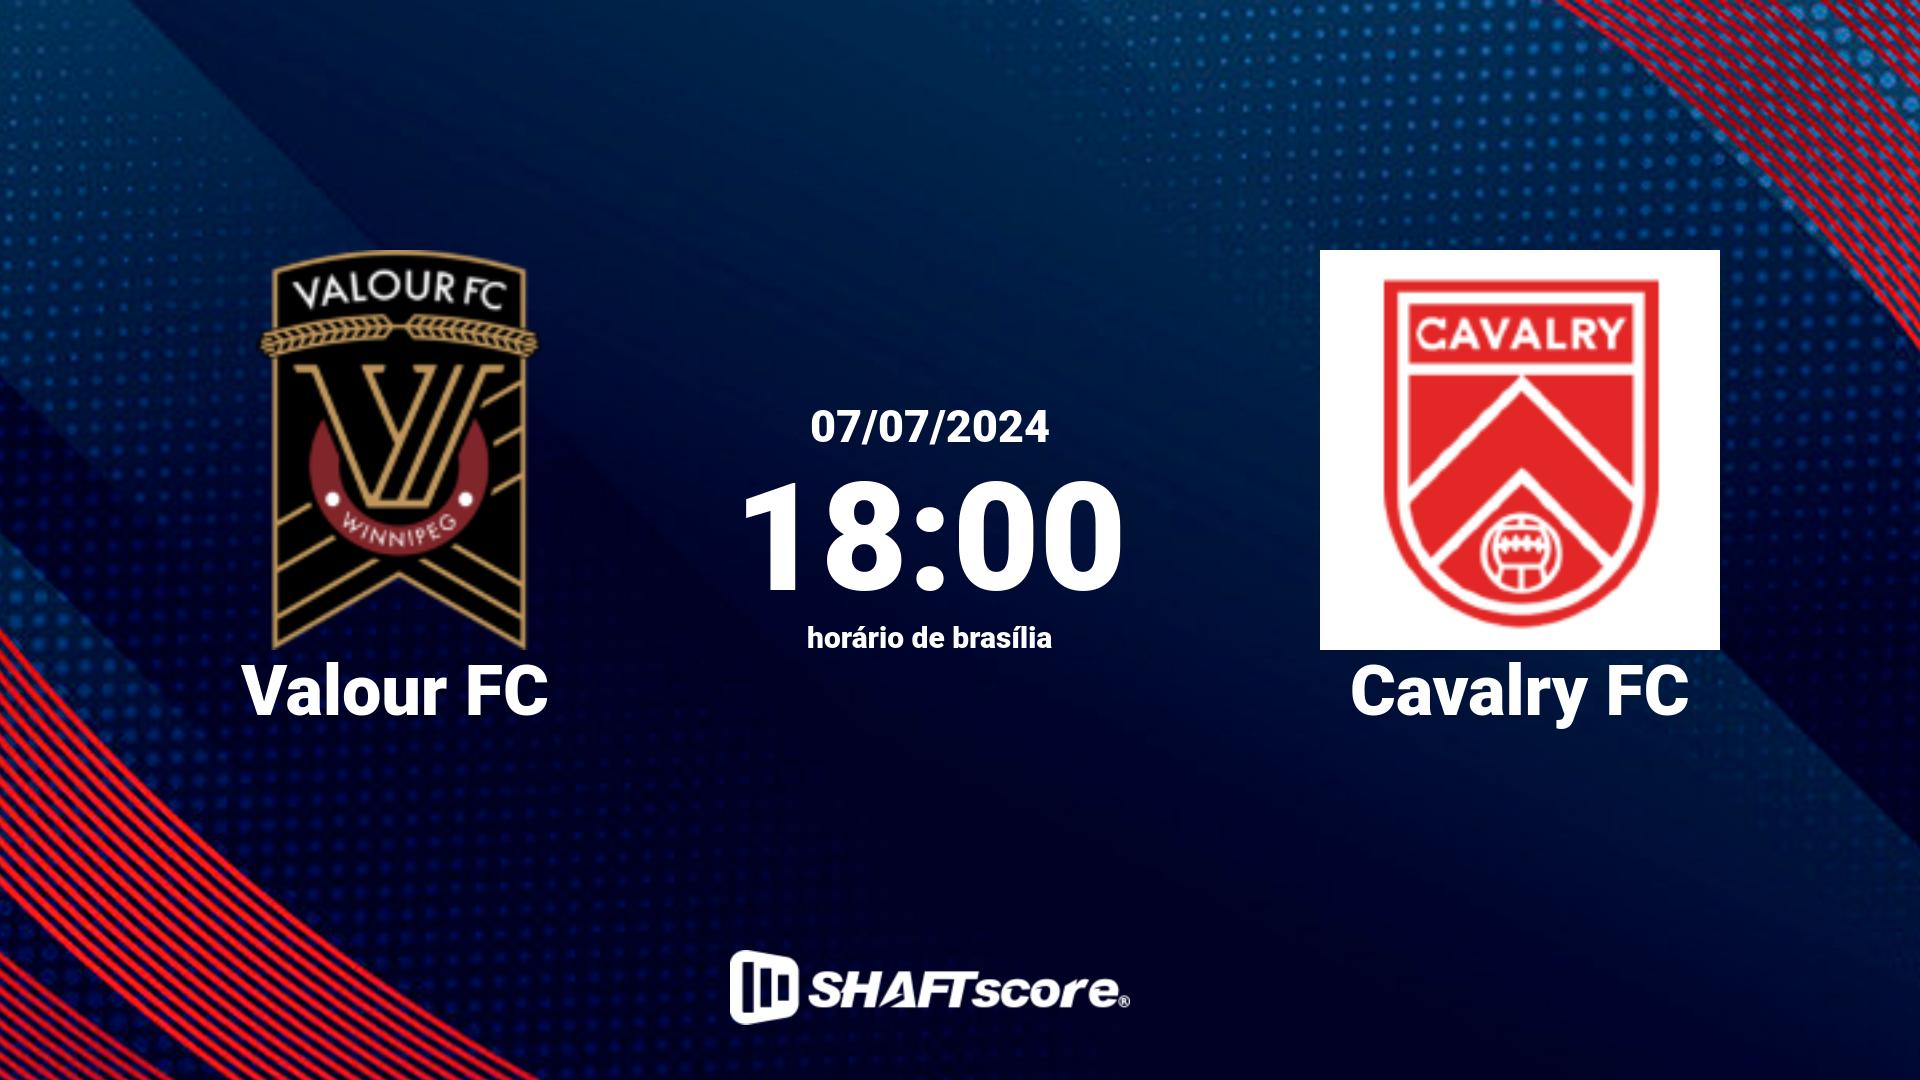 Estatísticas do jogo Valour FC vs Cavalry FC 07.07 18:00